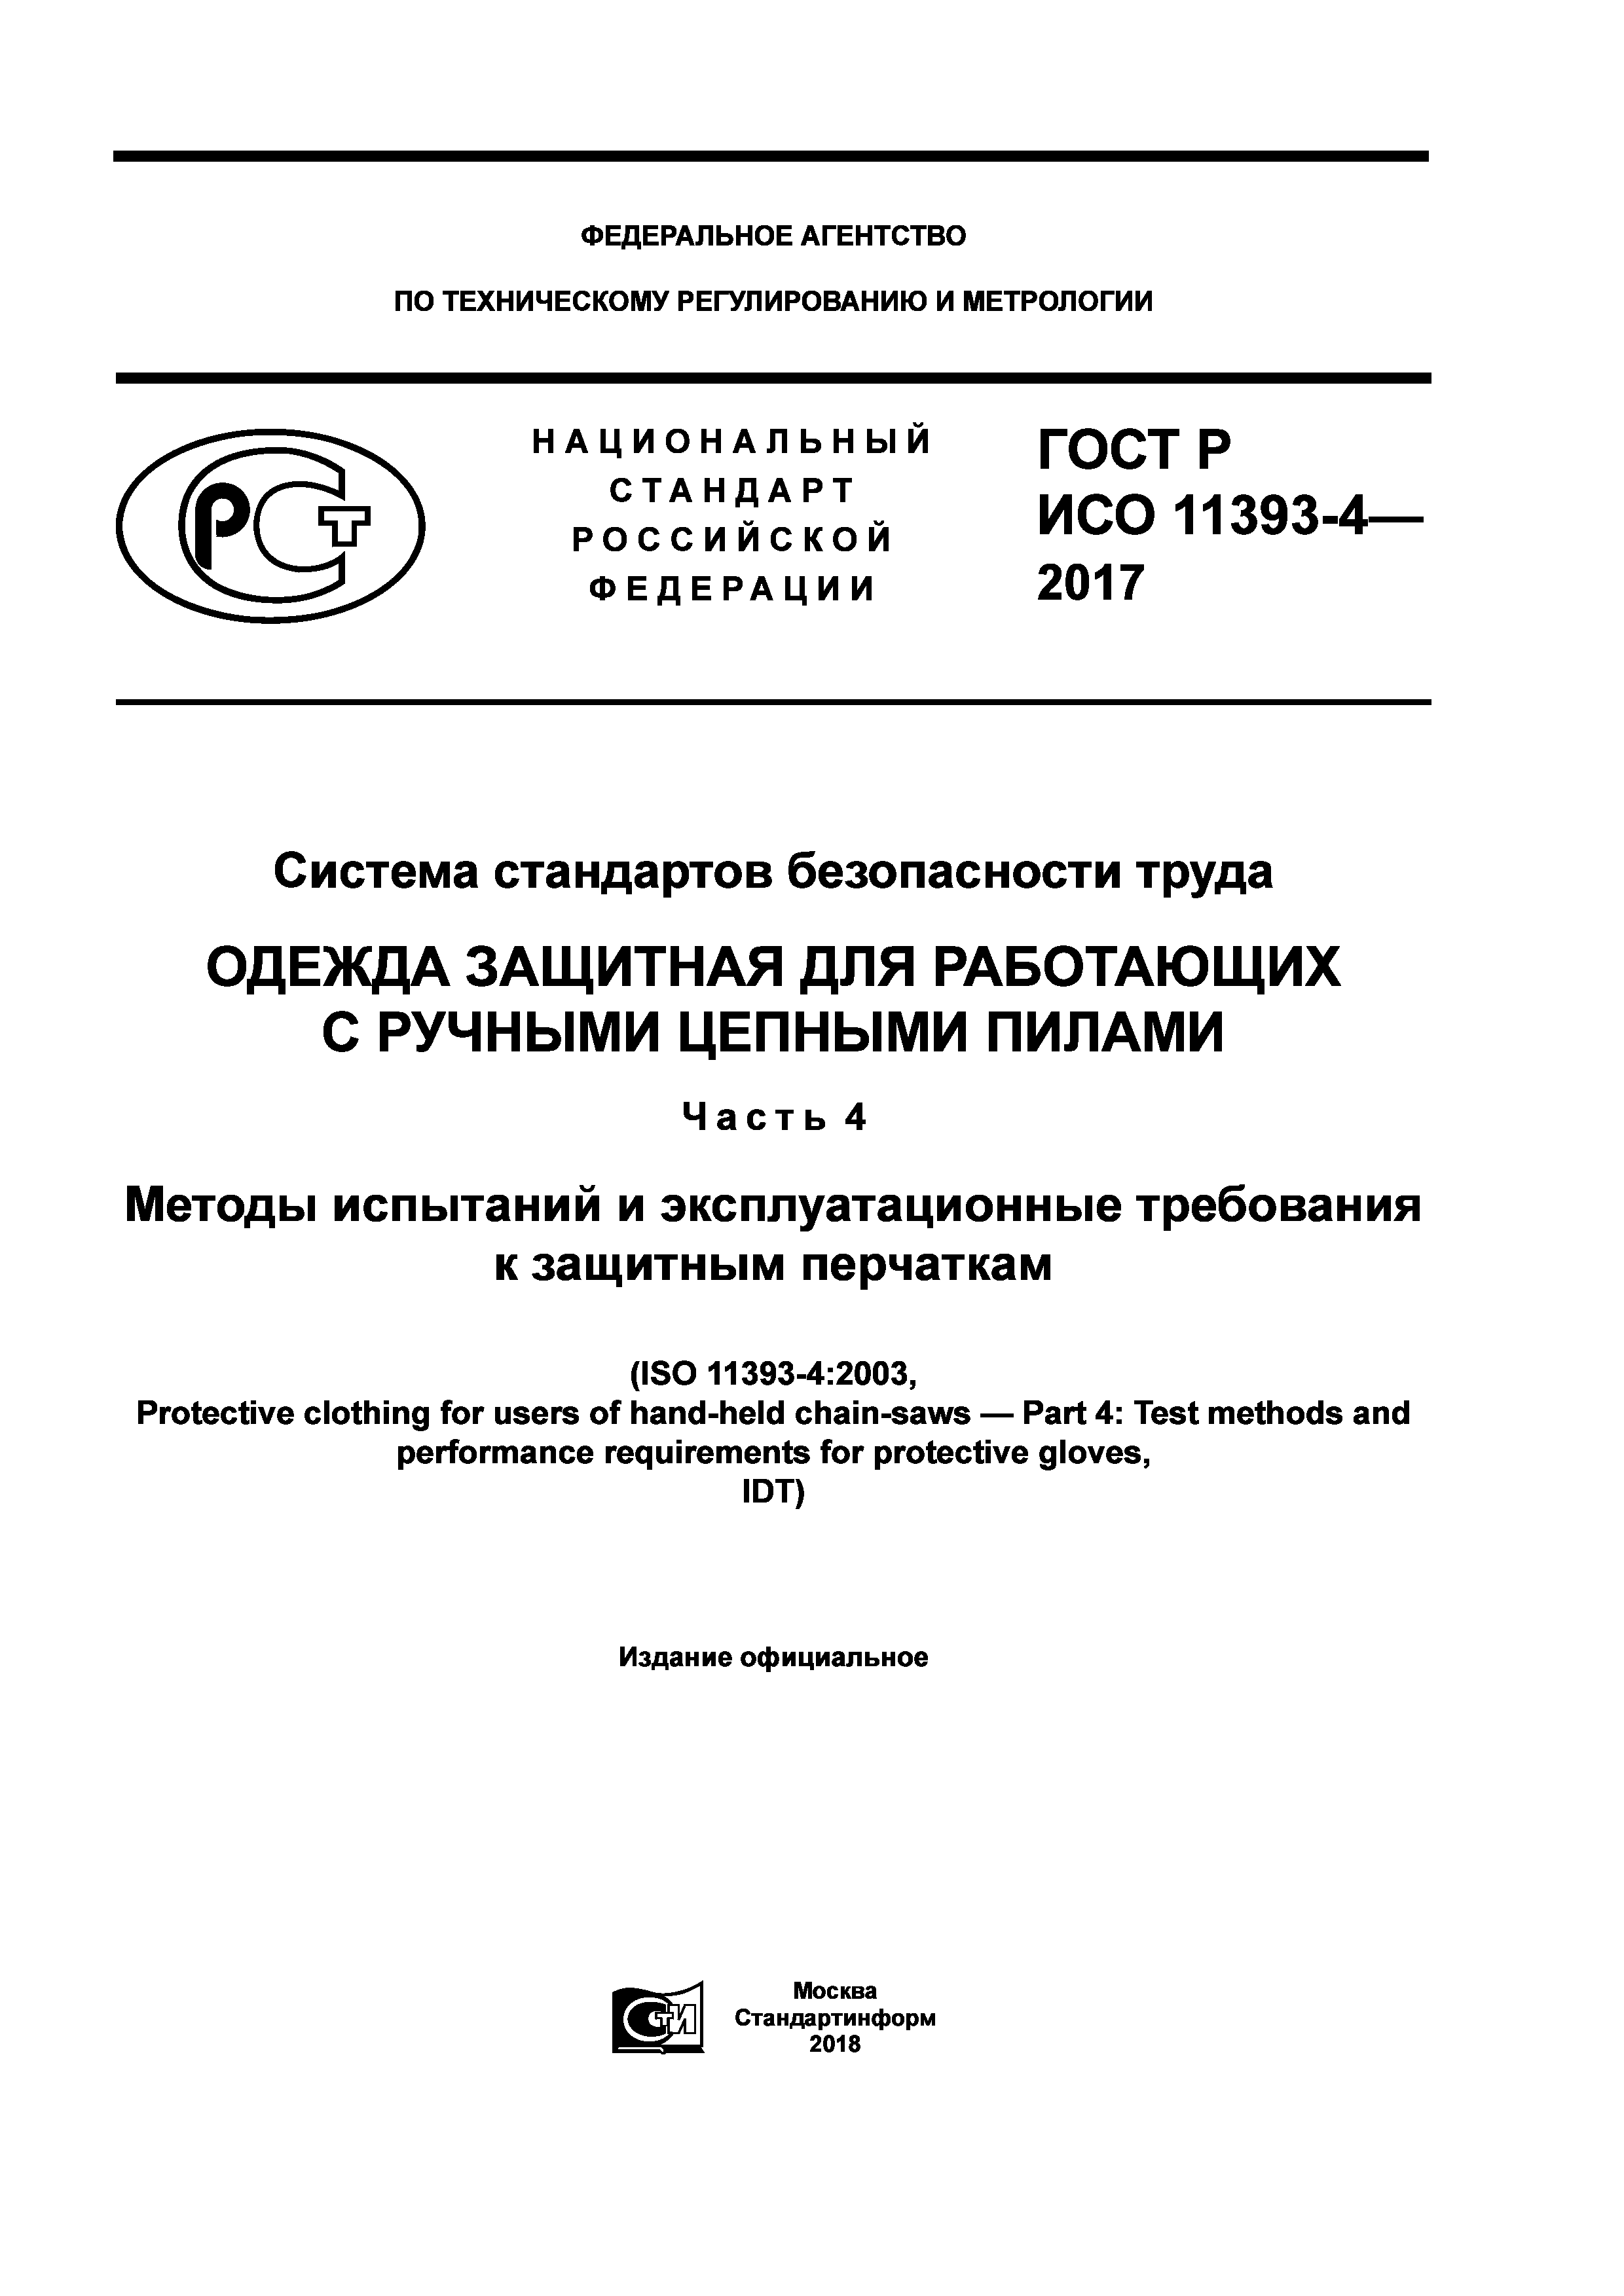 ГОСТ Р ИСО 11393-4-2017